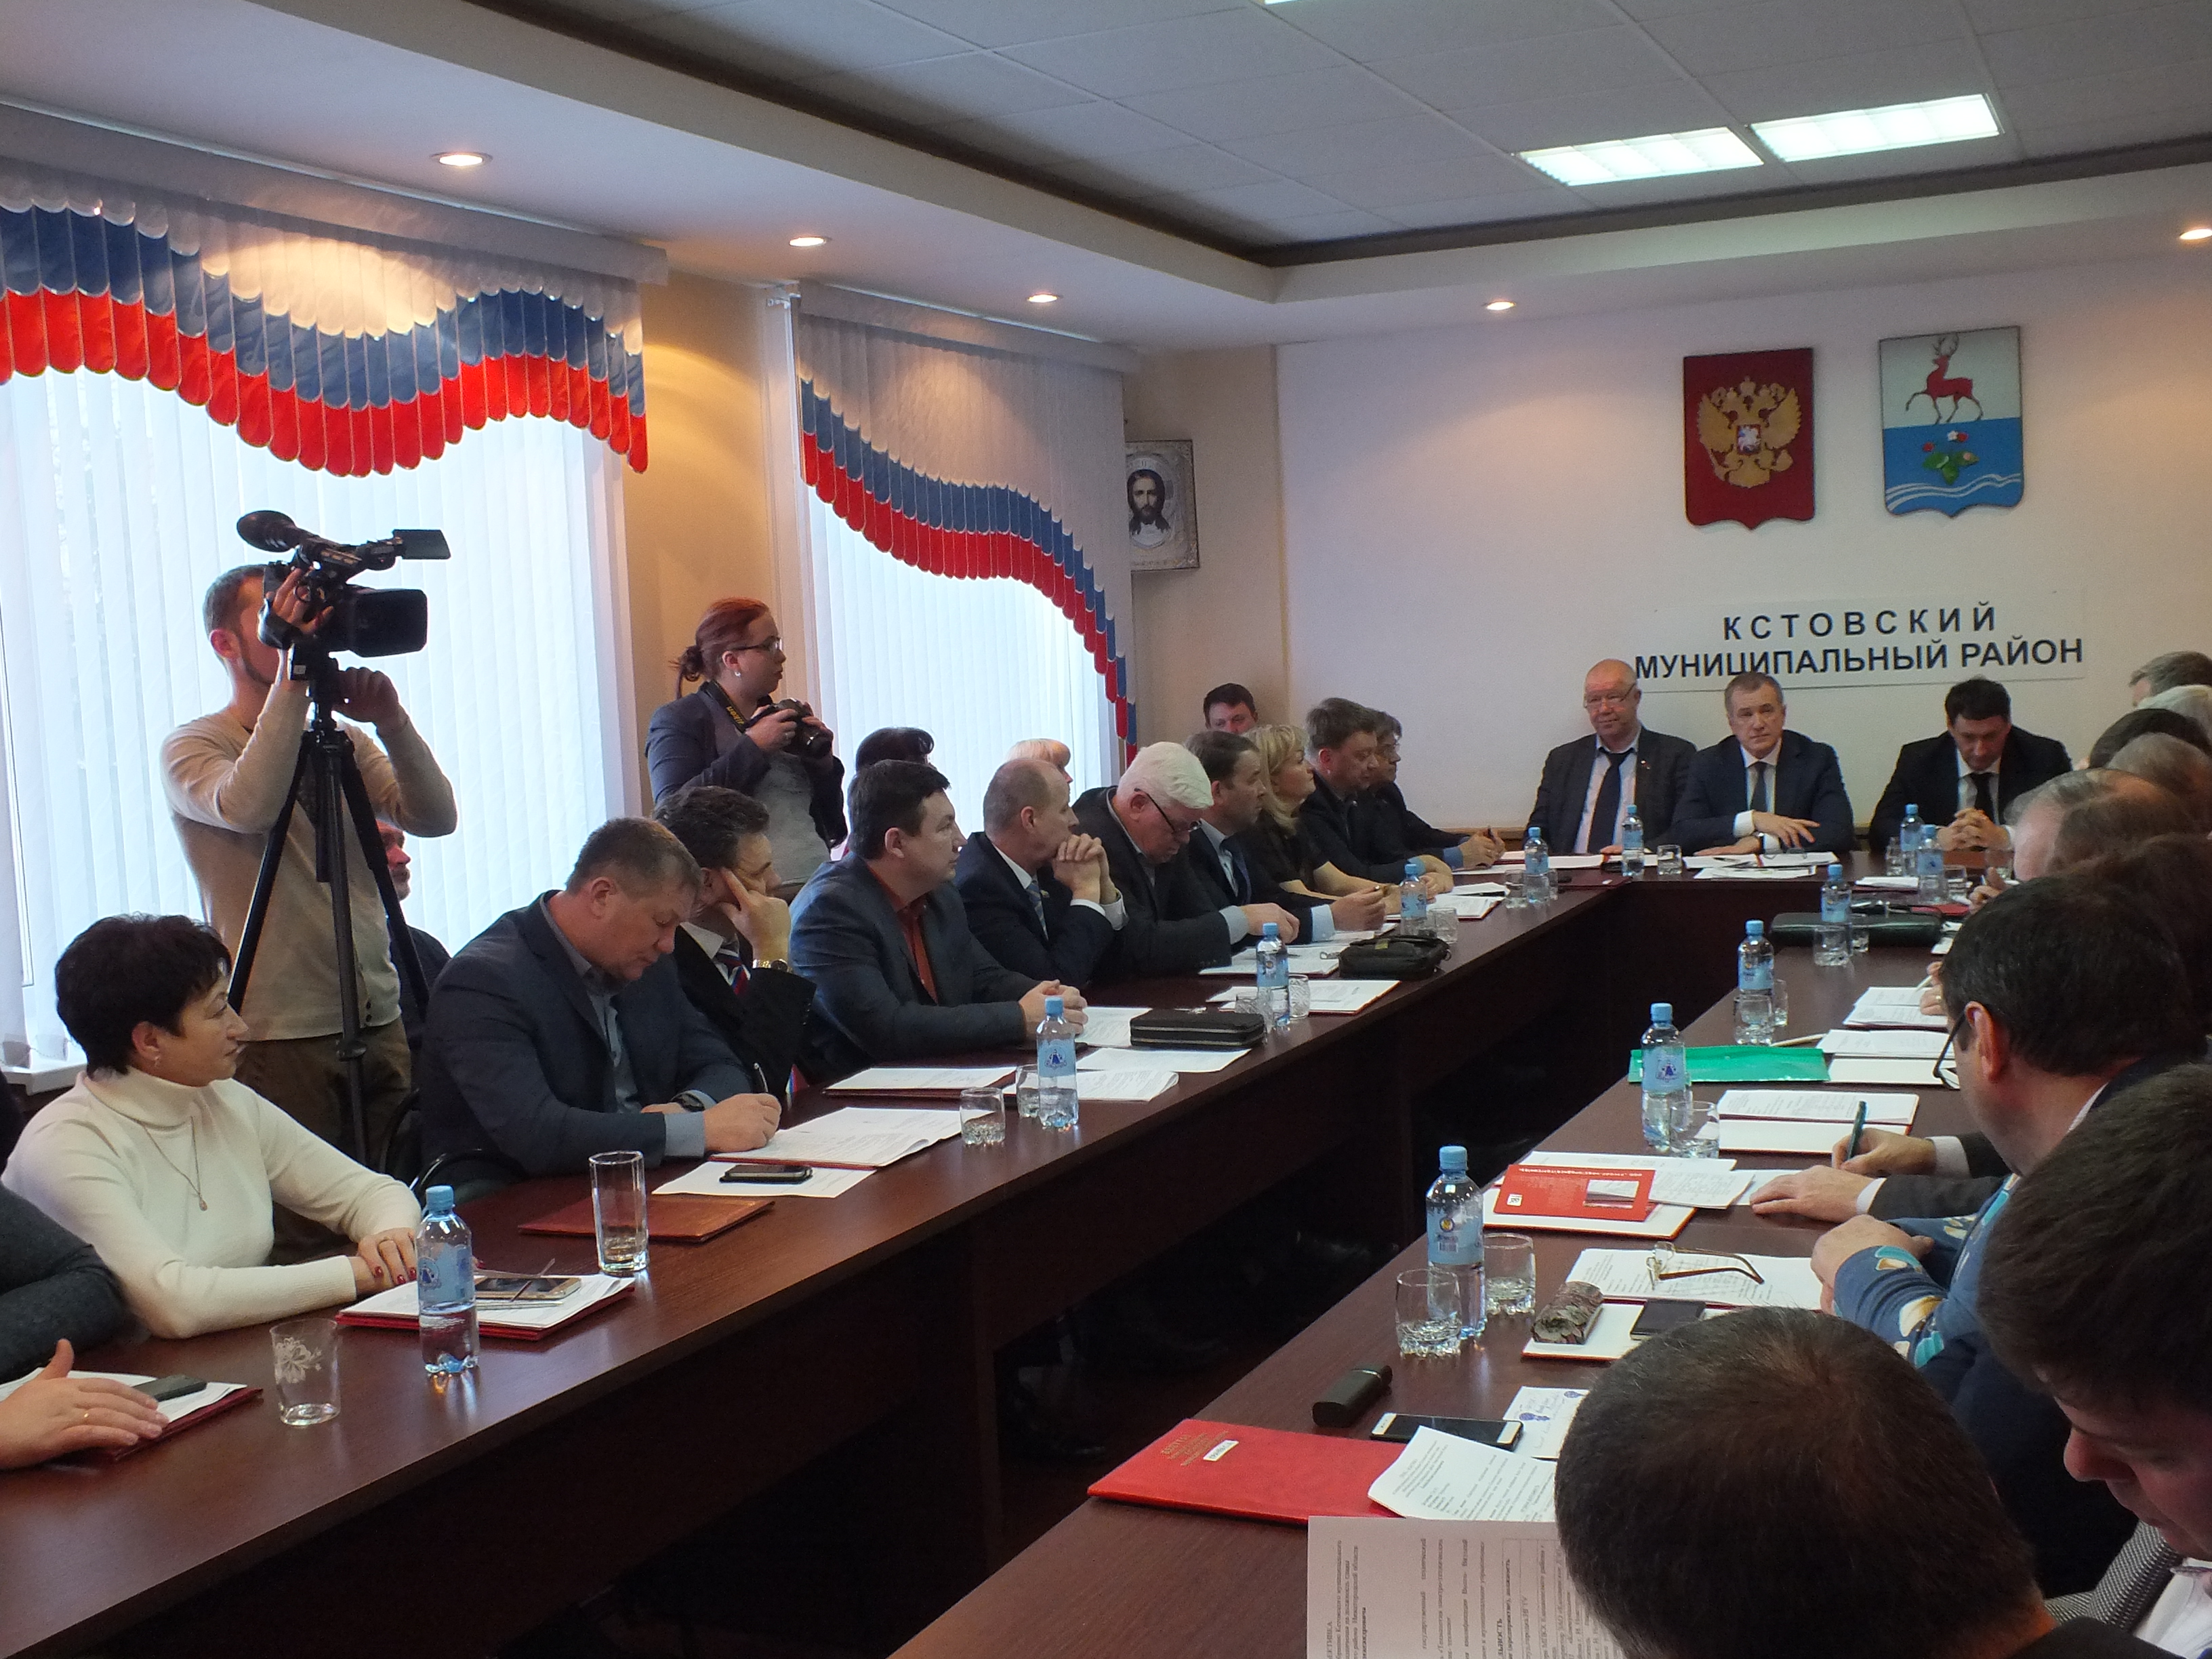 Виталий Ковалев стал главой администрации Кстовского района - фото 2